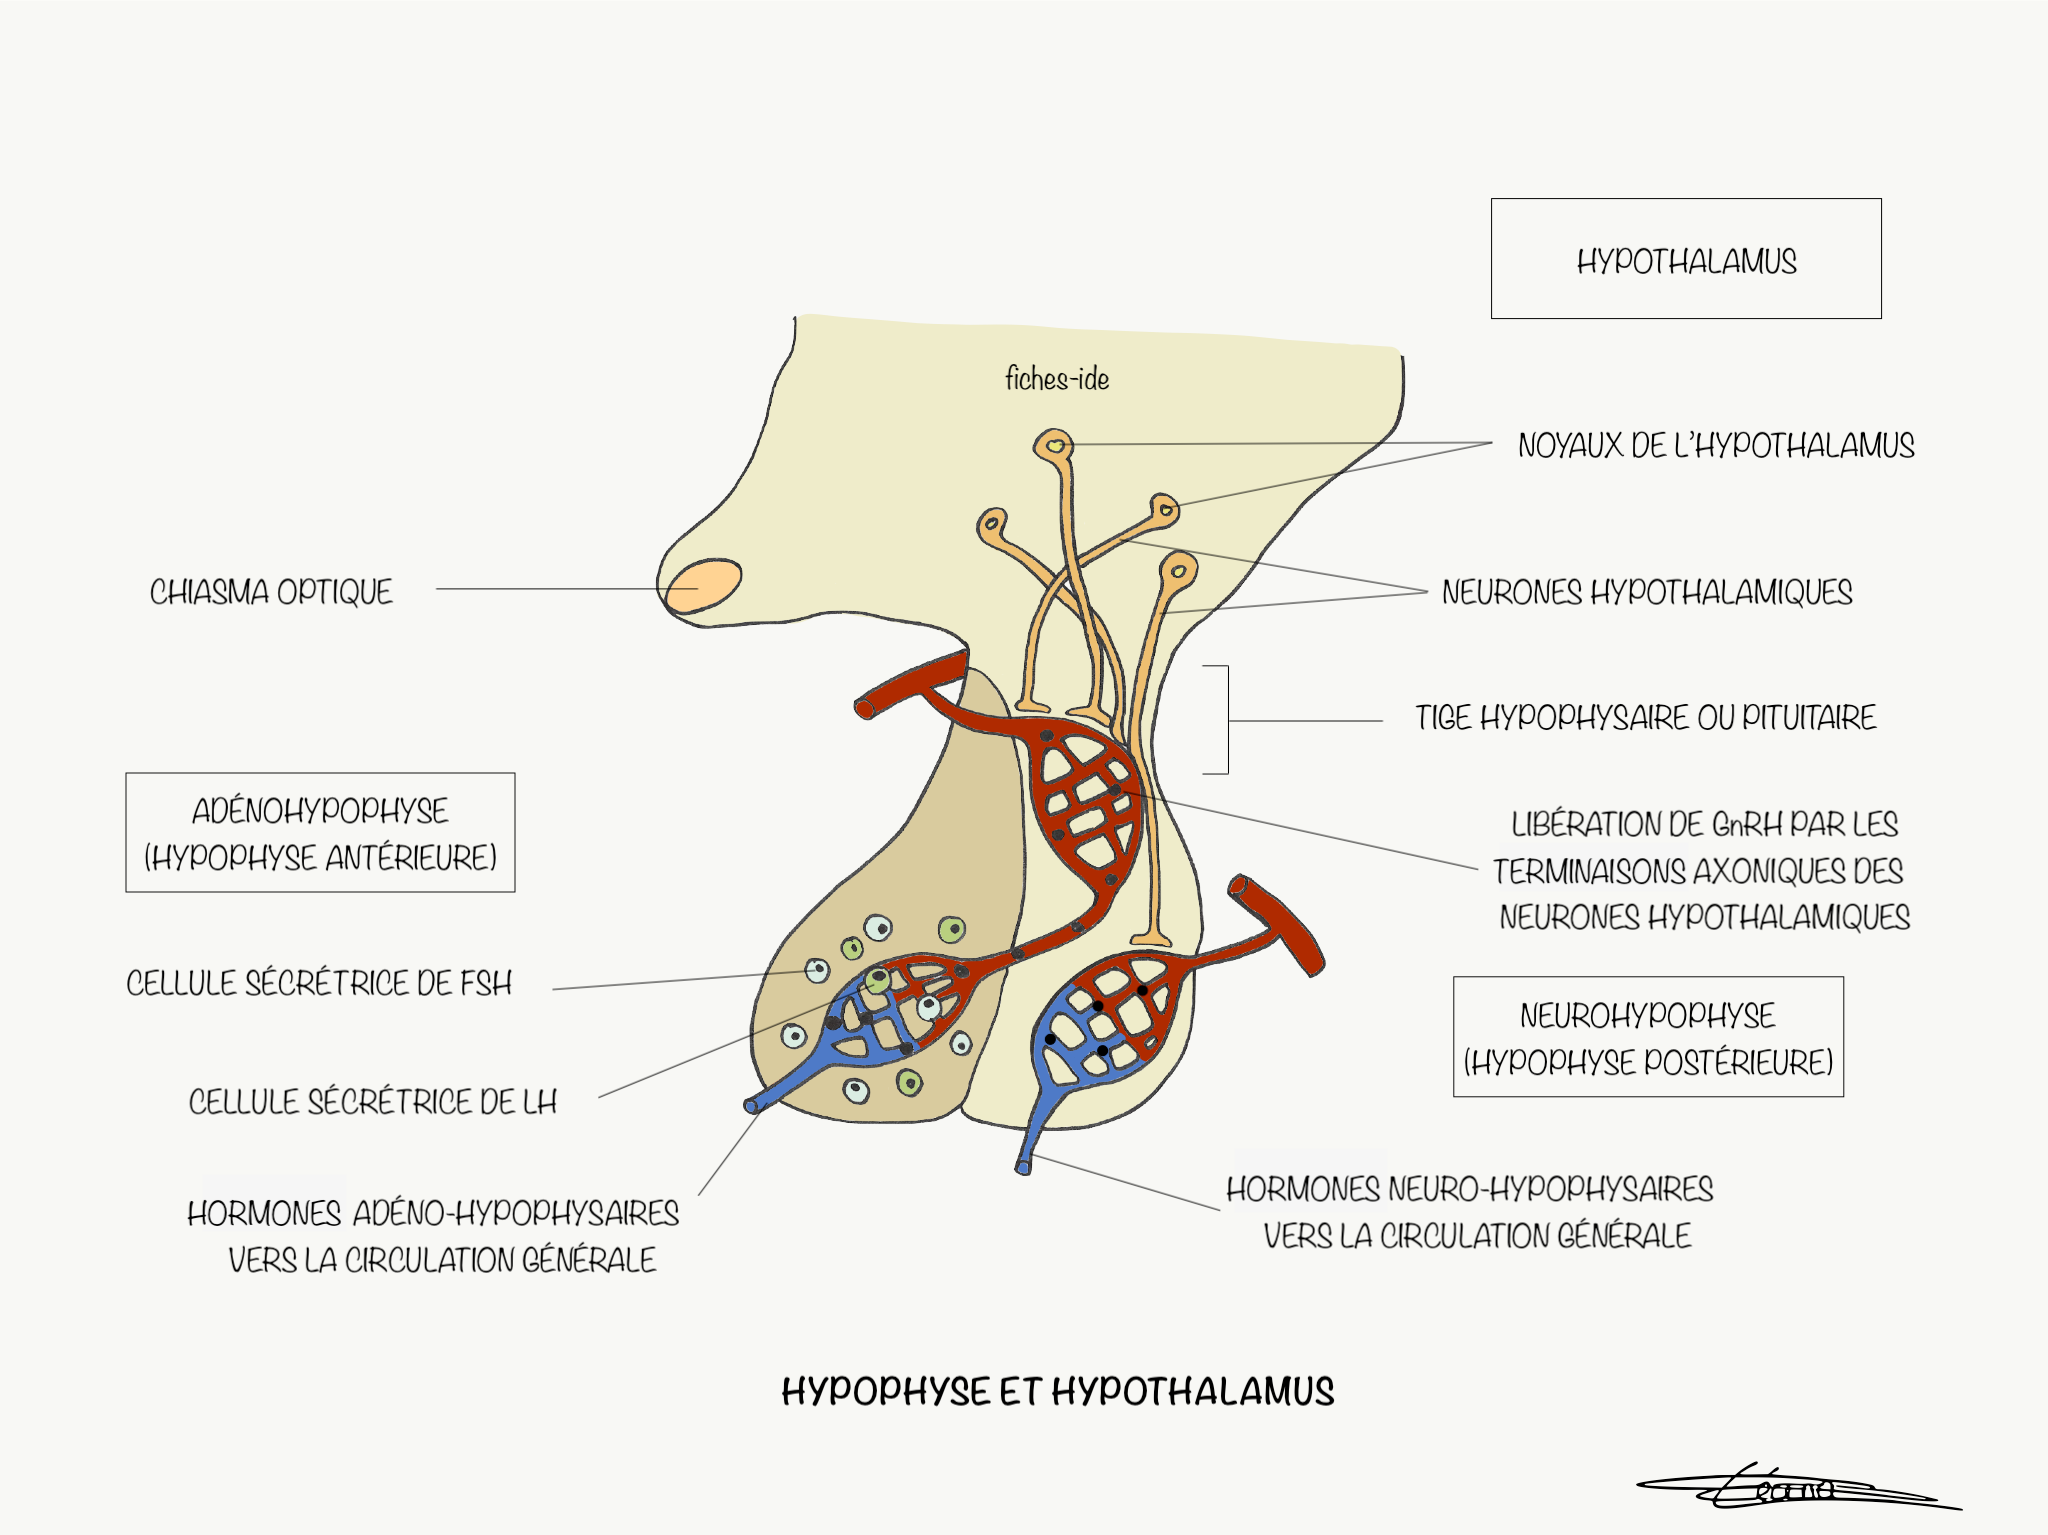 Hypophyse et hypothalamus - Fiches IDE